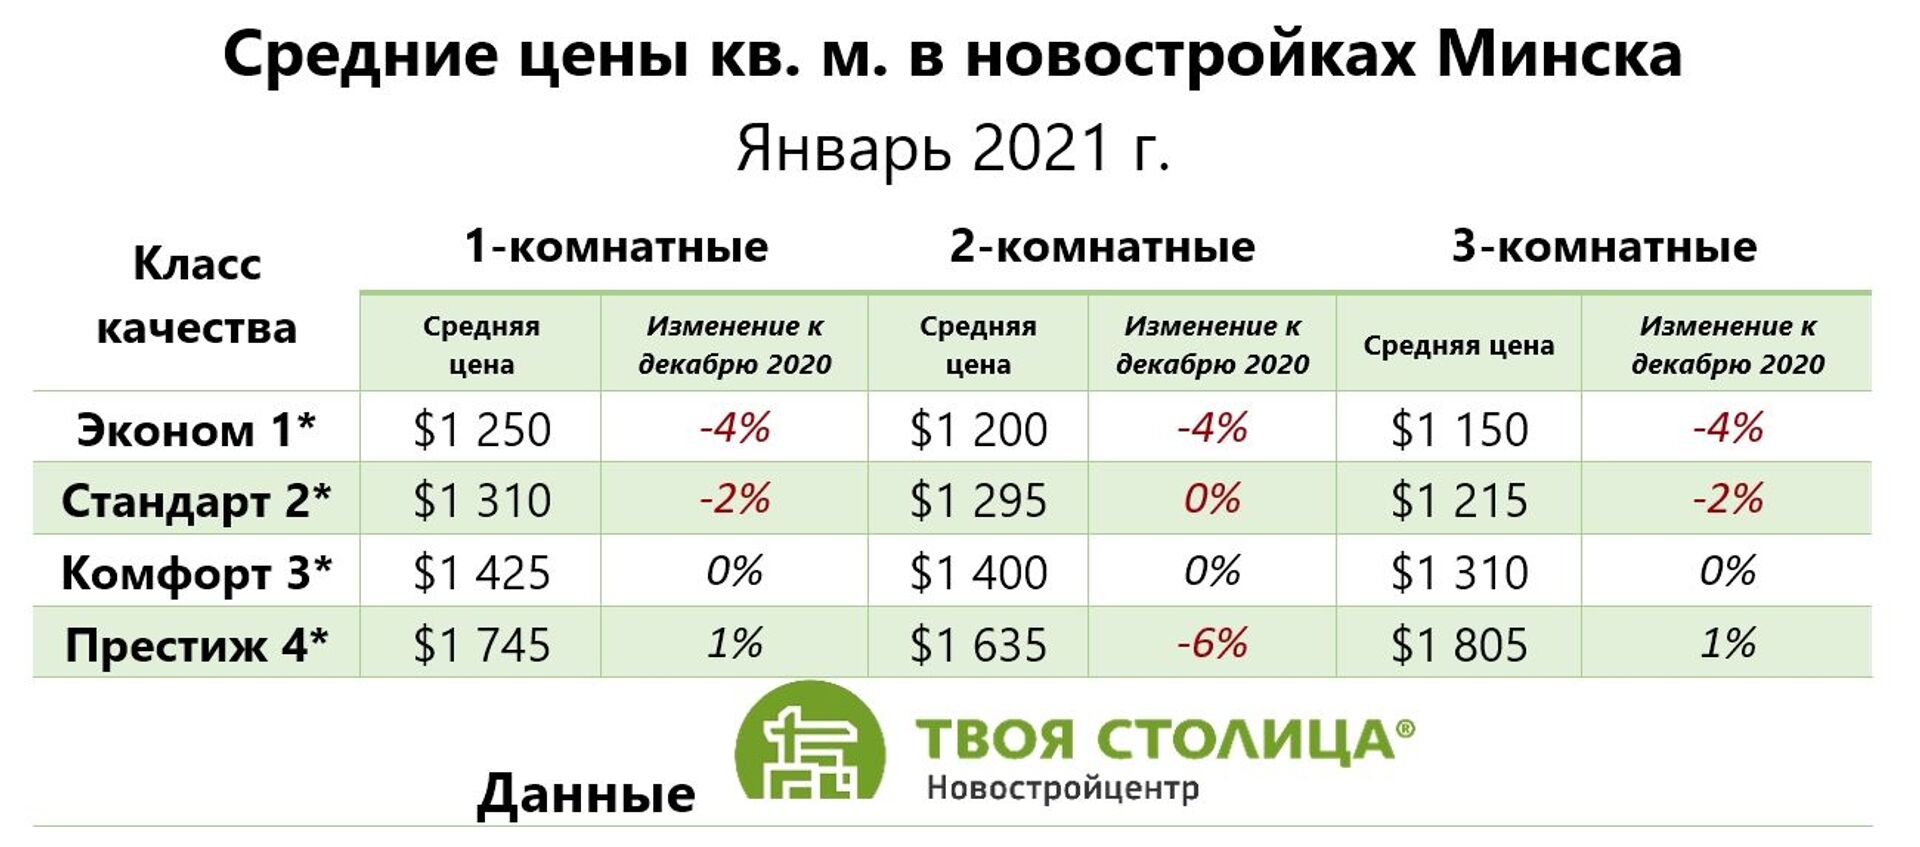 Цены вниз: чего ждать на рынке жилья Минска в этом году - Sputnik Беларусь, 1920, 11.02.2021